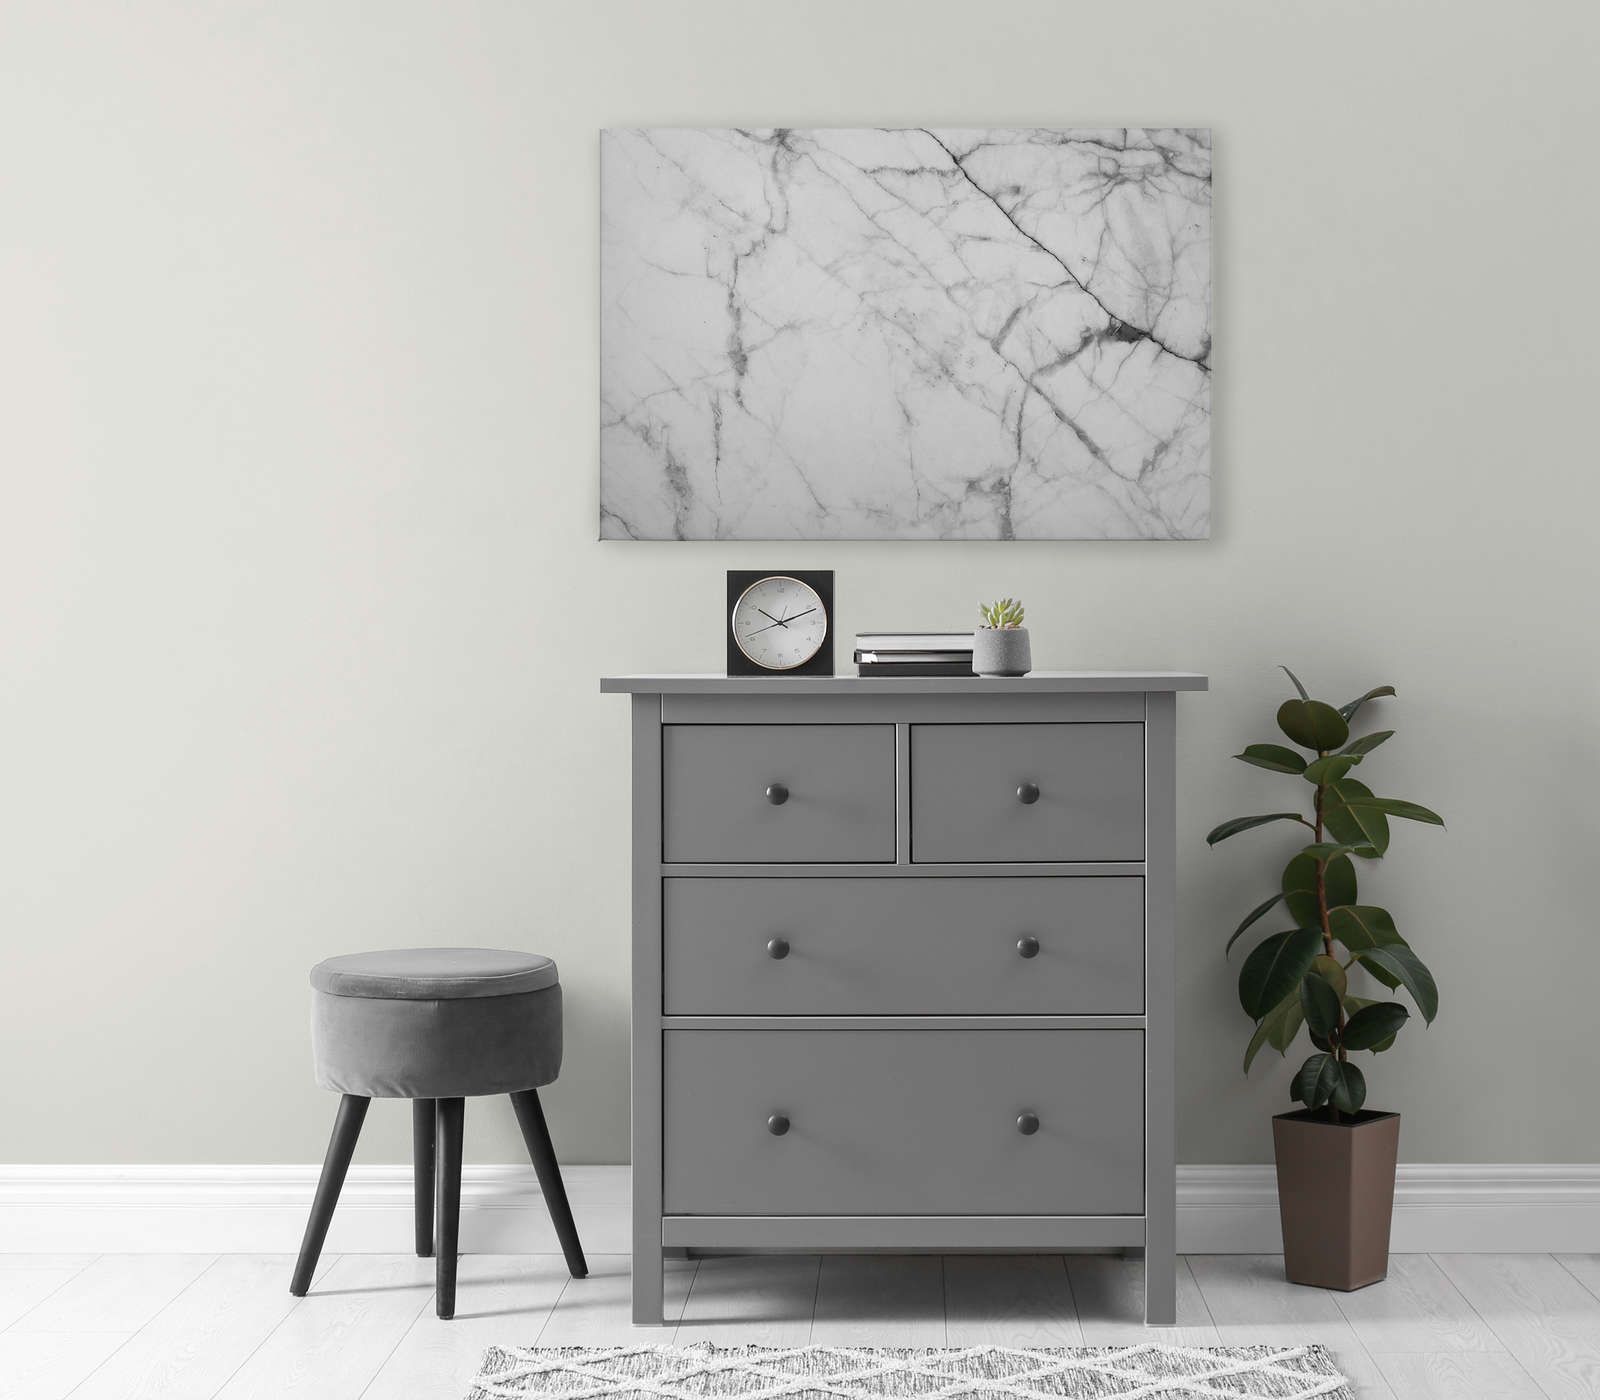             Schwarz-Weiß Leinwandbild Marmor mit natürlichen Details – 0,90 m x 0,60 m
        